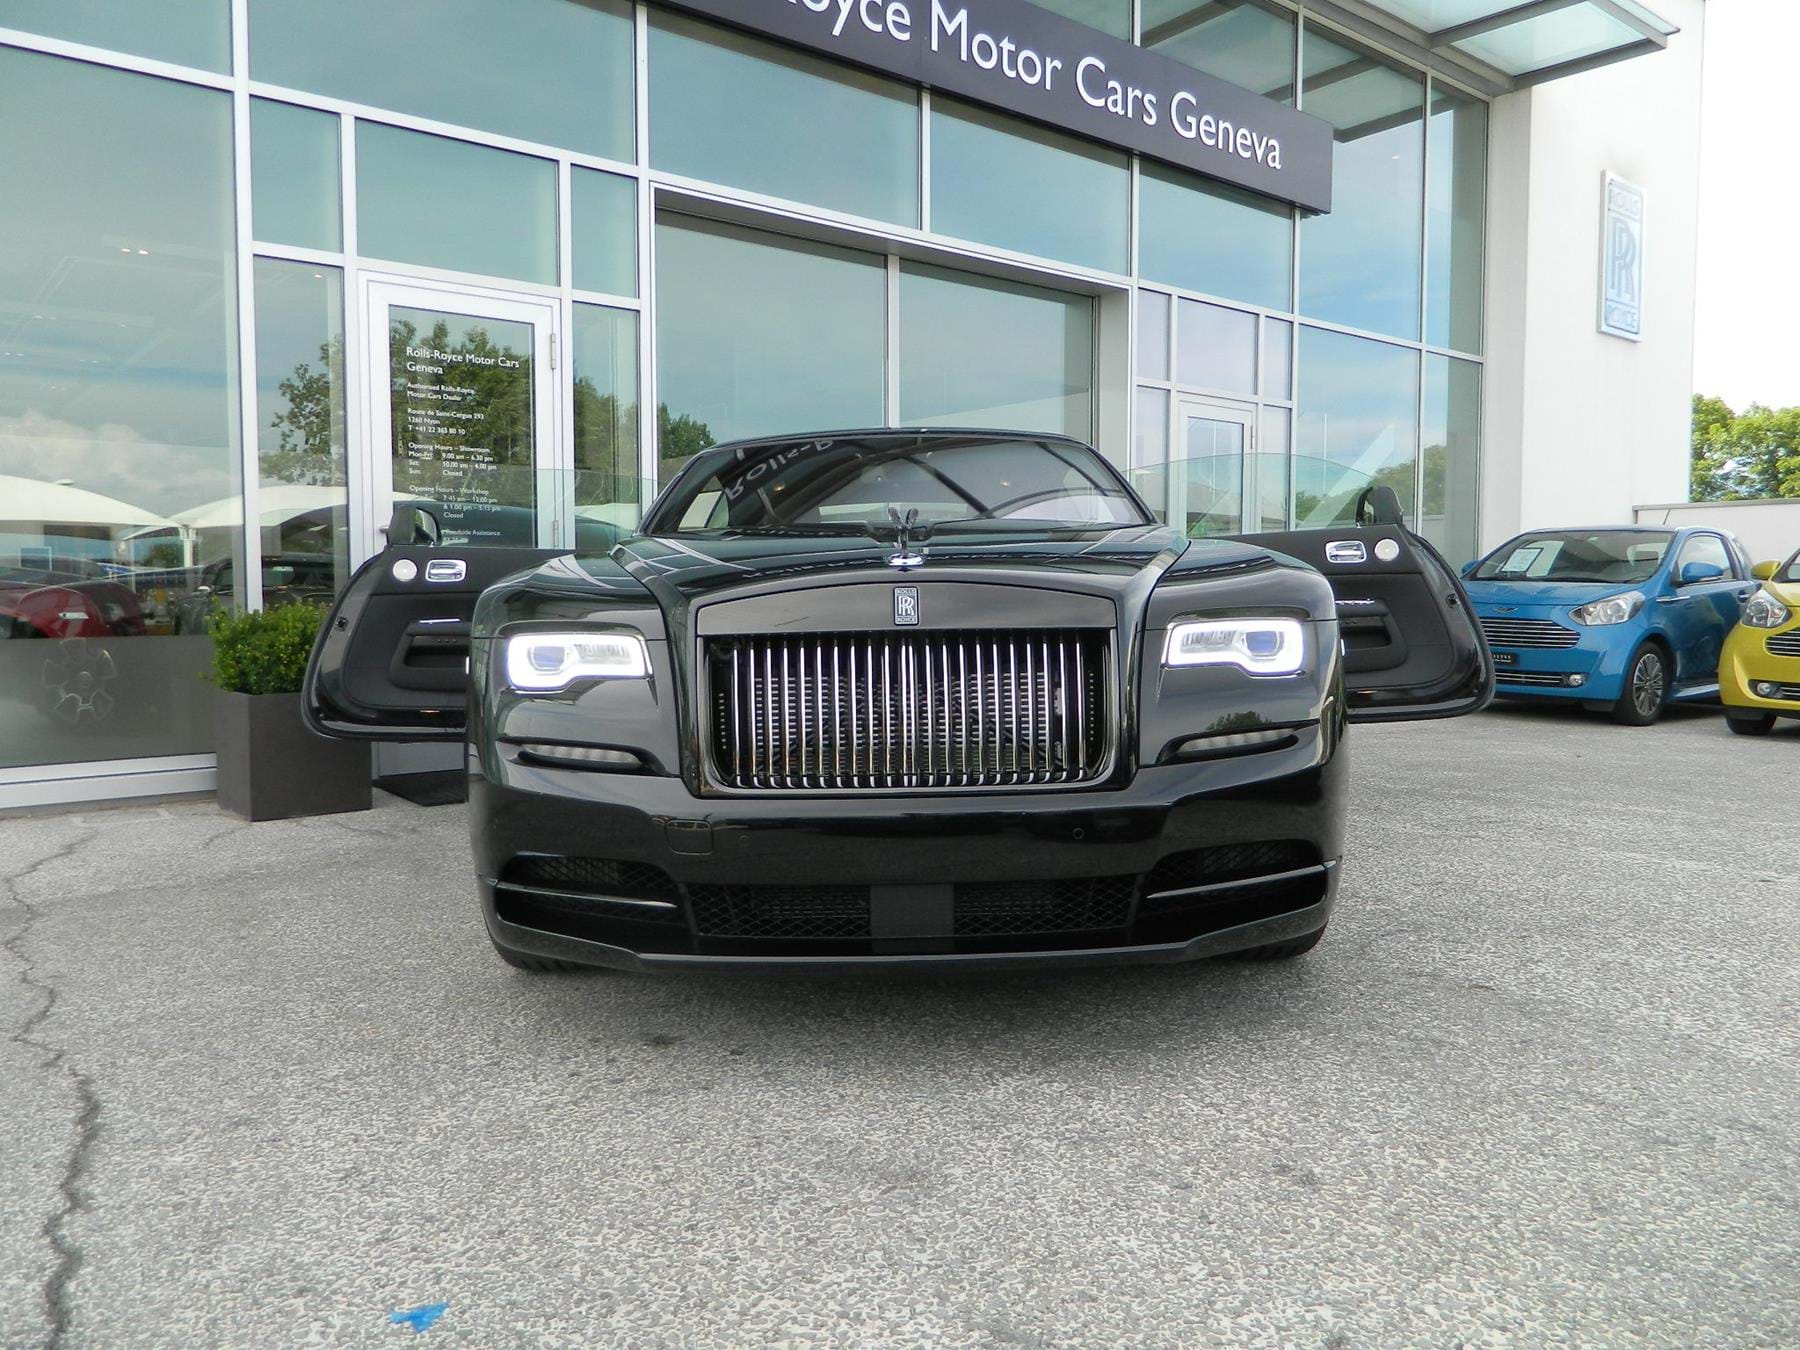 RollsRoyce Sunningdale on Instagram NEW ARRIVAL September 2018  rollsroycewraith finished in Black Diamond with S  Rolls royce Rolls  royce wraith Dream cars